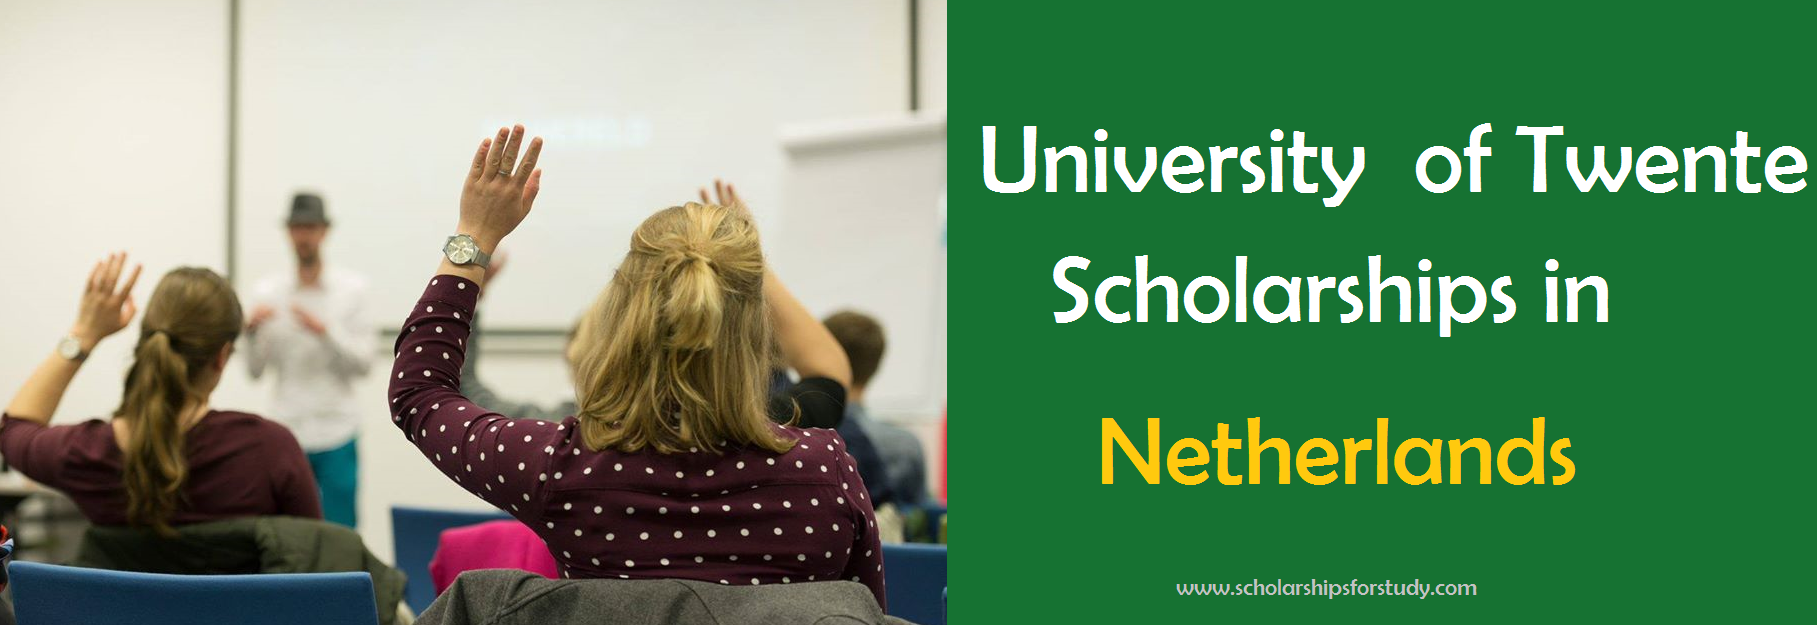 University of Twente Scholarships in Netherlands 